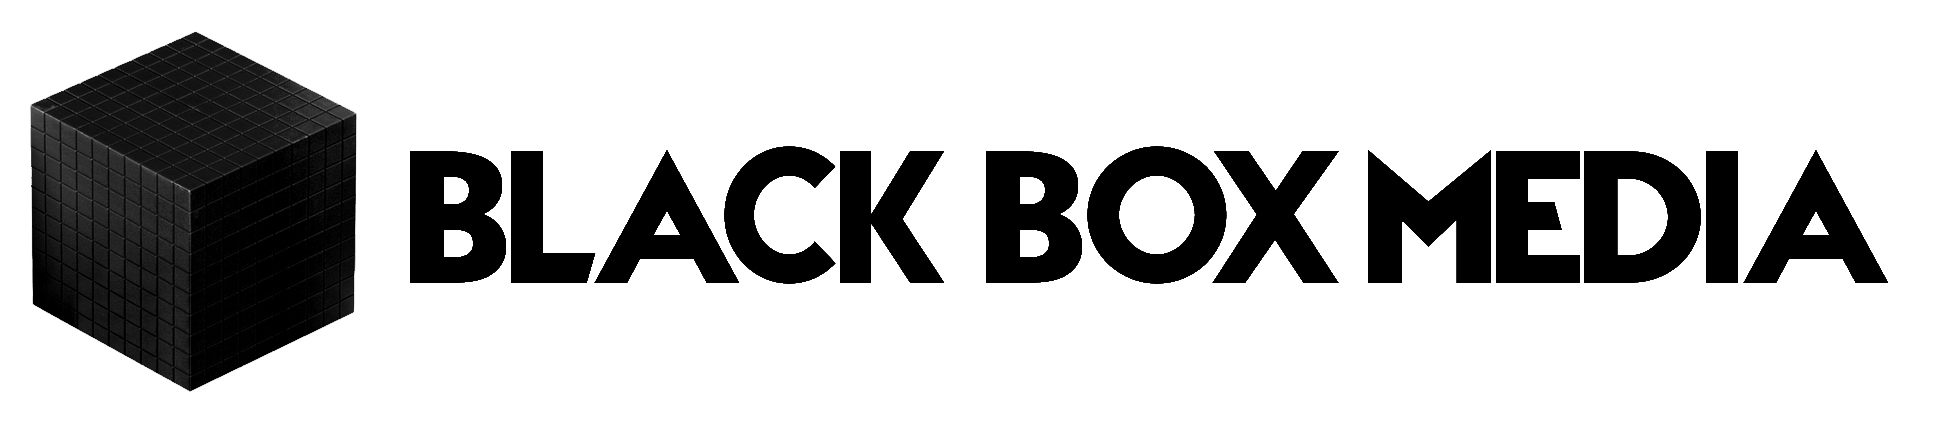 Black Box Media Logo